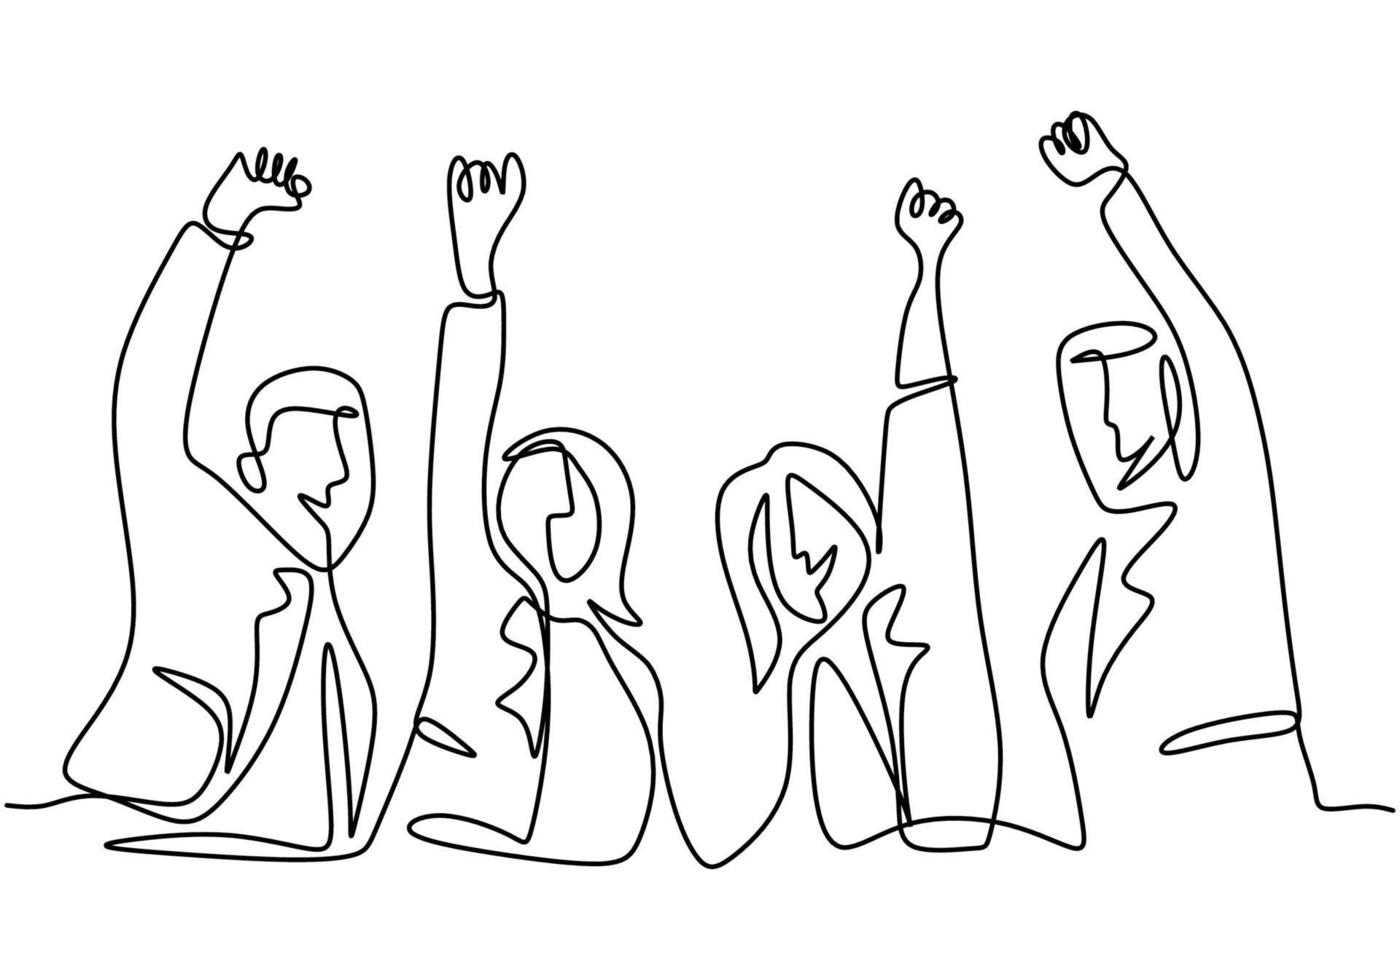 doorlopende lijntekening van kantoormedewerker handen omhoog en springen gelukkig. jonge zakenman en zakenvrouw spreekt over succes met handgetekende minimalistische stijl van nieuwe projecten. vector illustratie